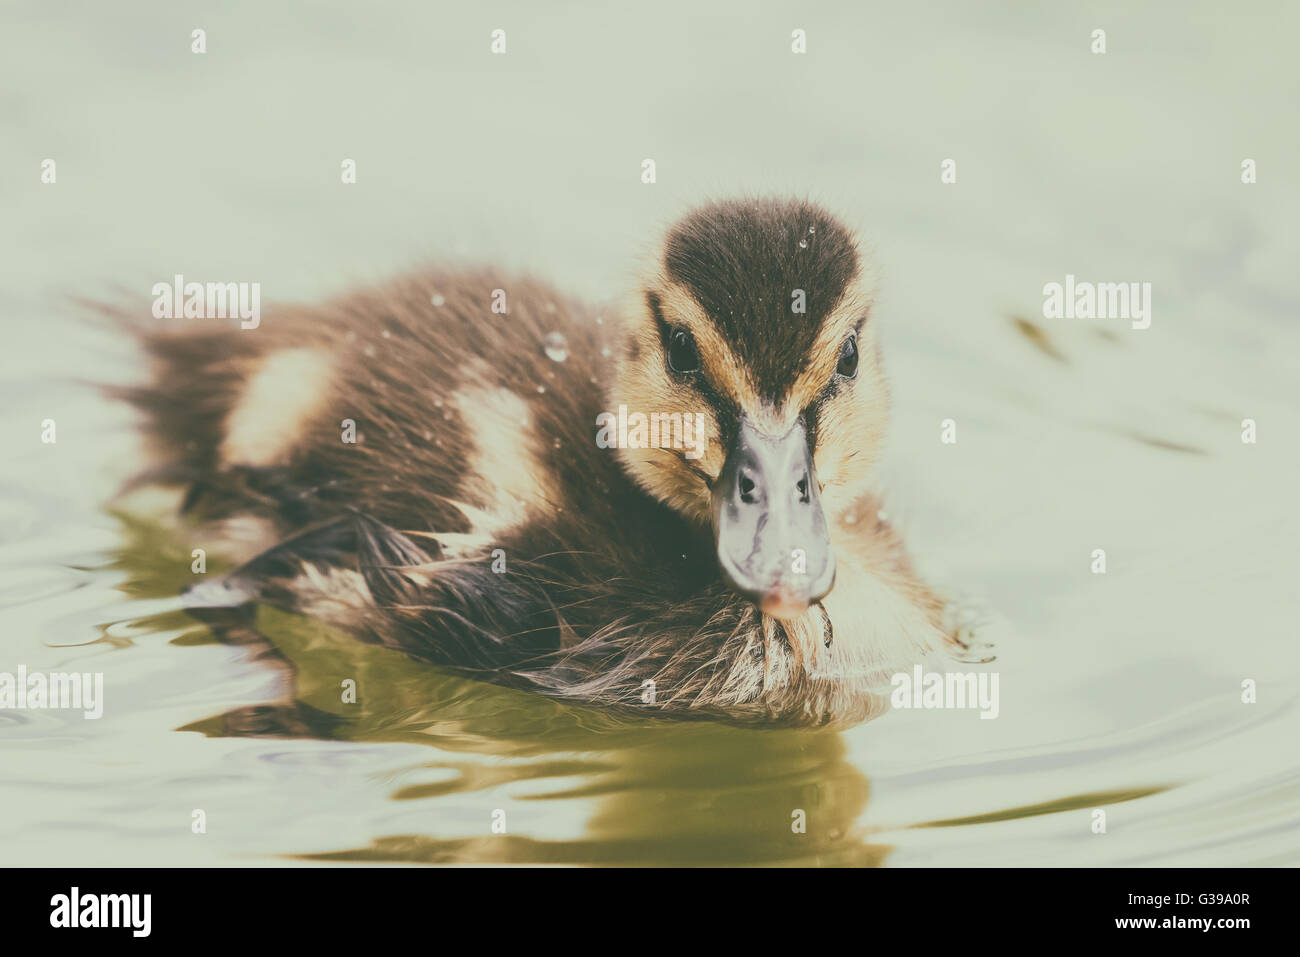 Baby Duck Bird Swimming On Water Stock Photo